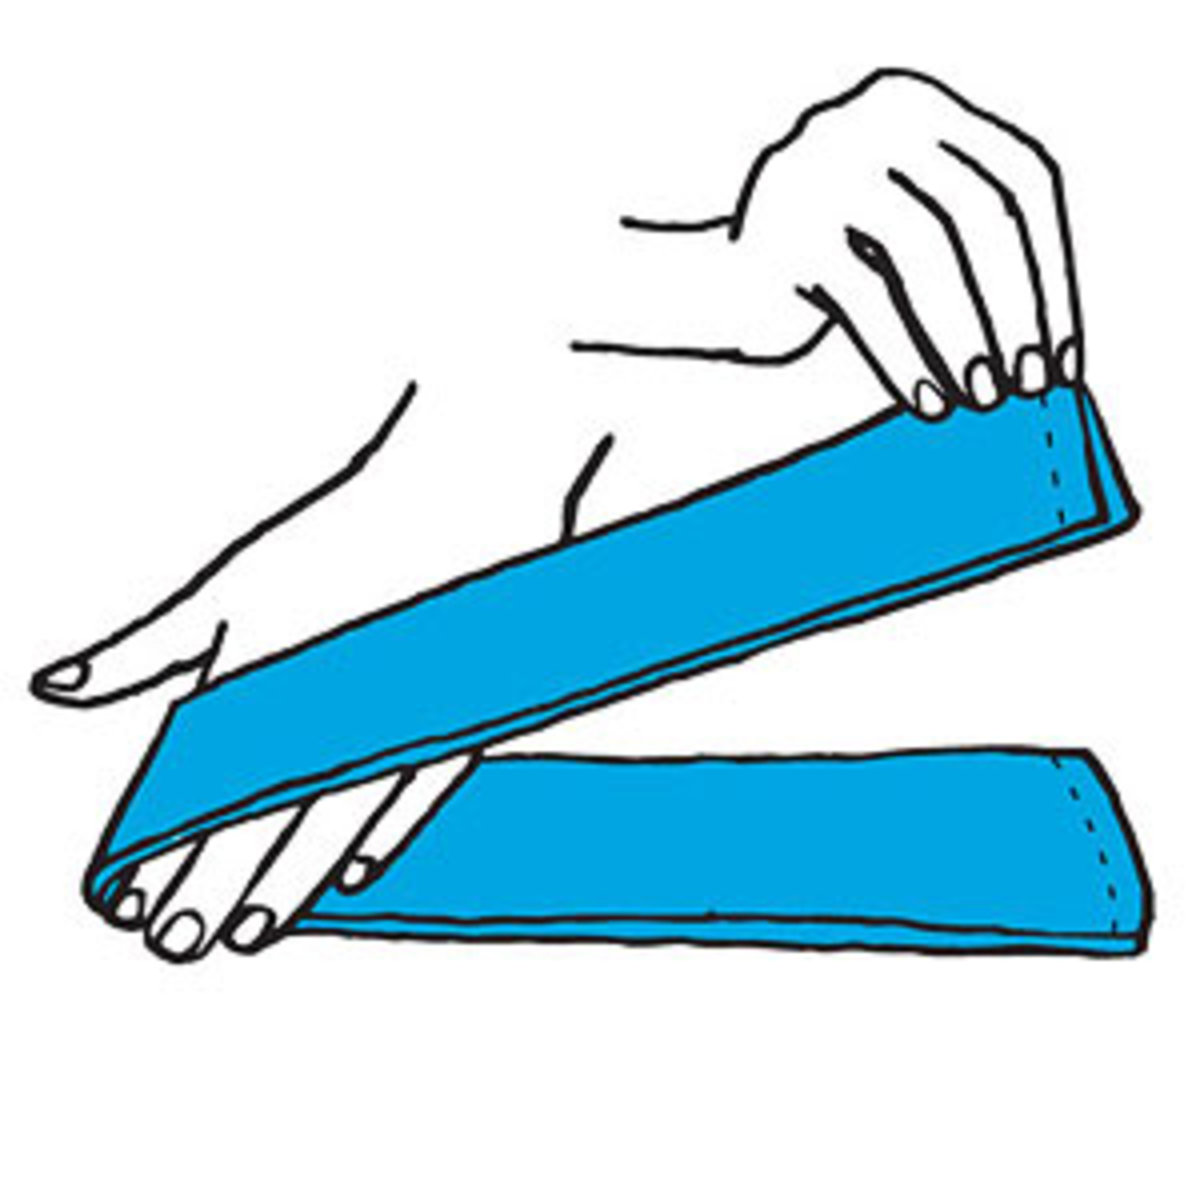 4 Easy Napkin Folds